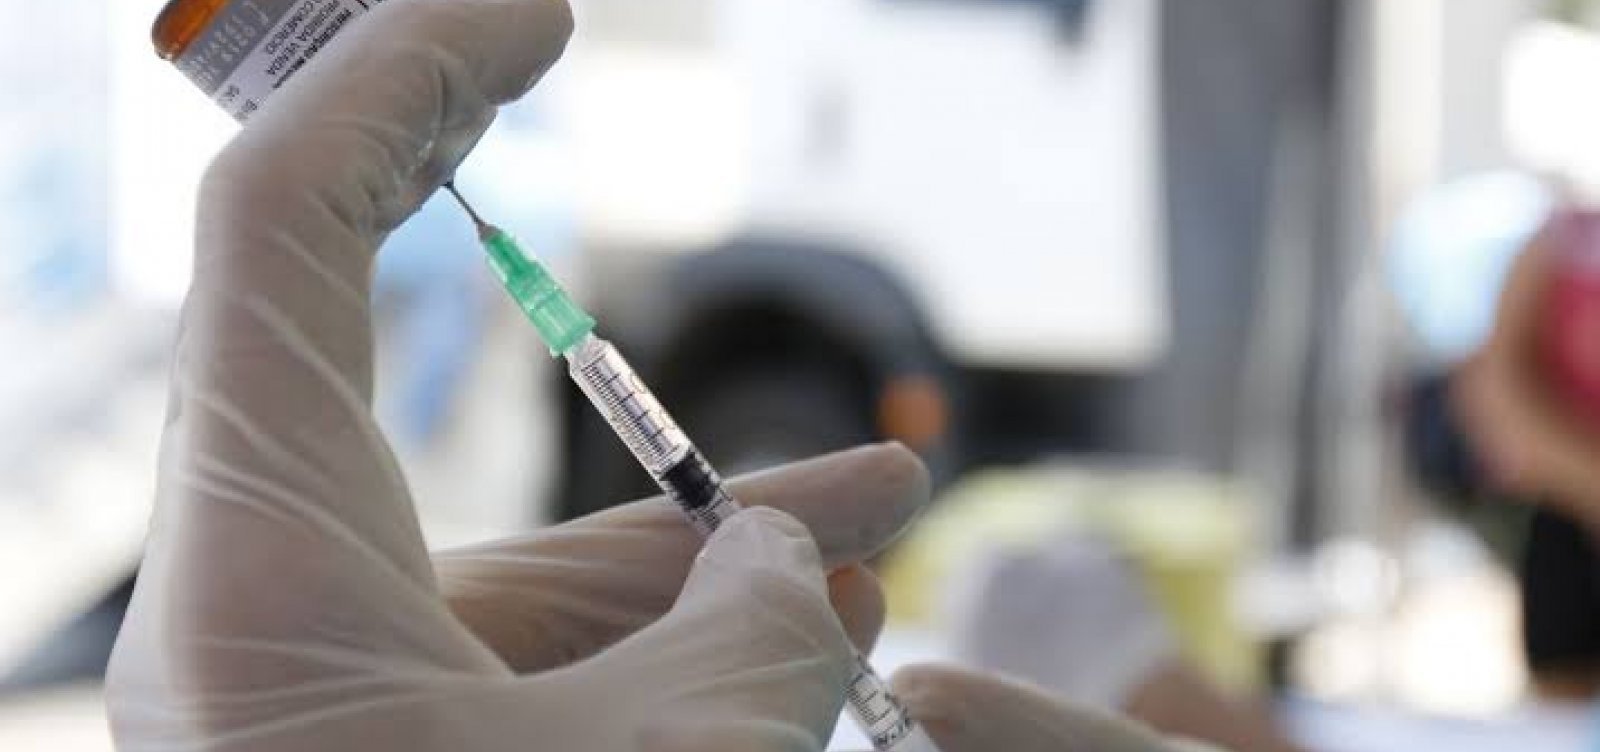 Comissão que apura fraudes na vacina recebeu 39 demandas em 4 meses